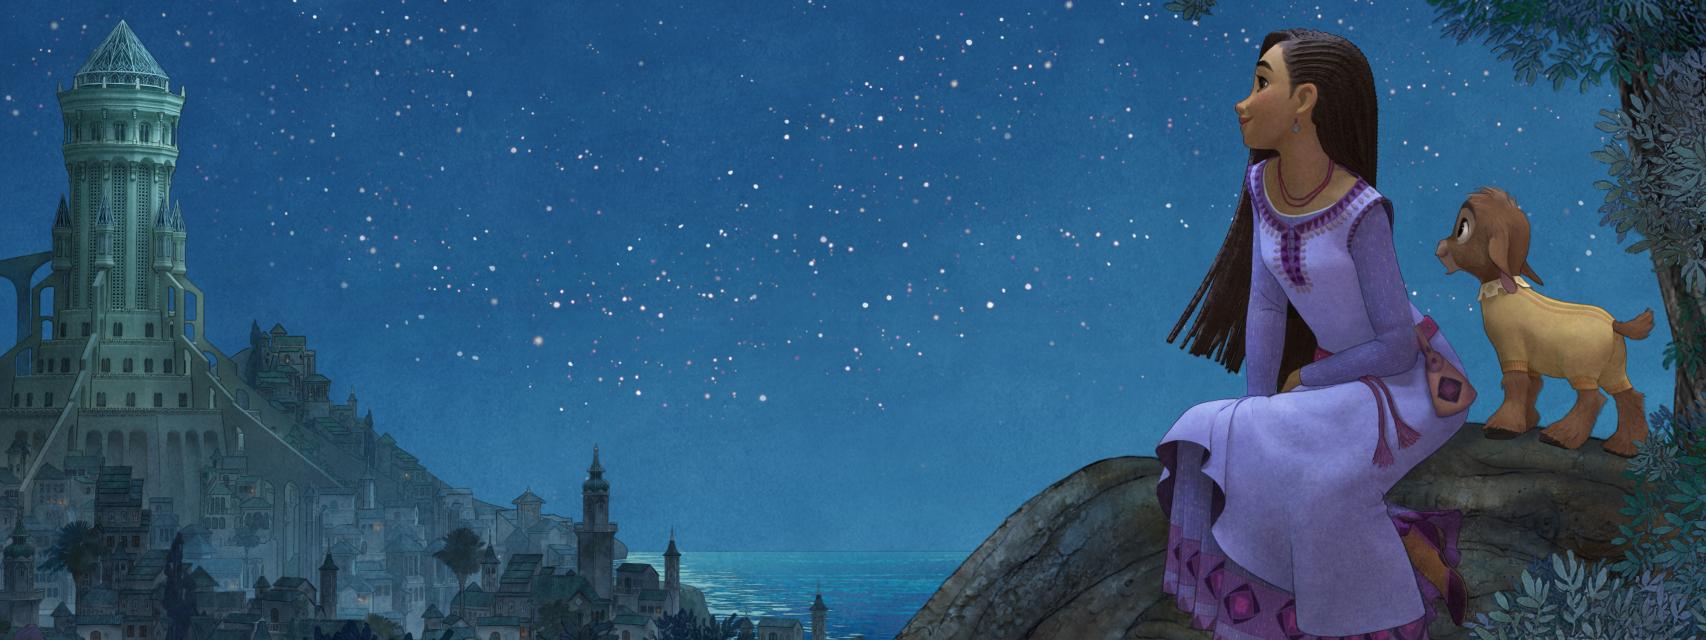 Disney revela el tráiler de su nueva película “Encanto”